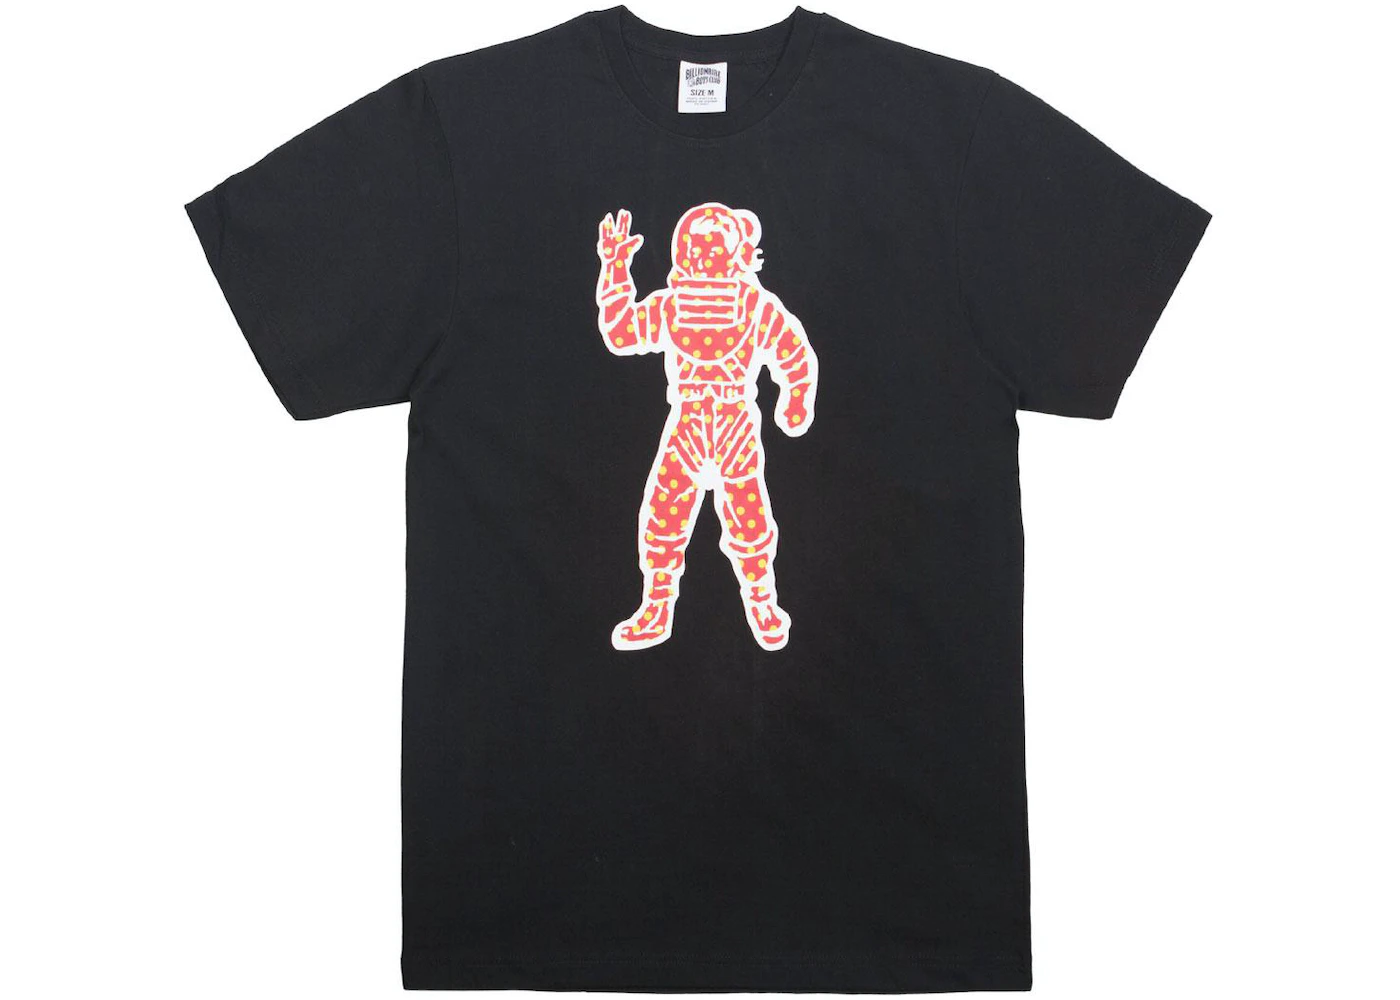 Louis Vuitton Astronaut T shirt